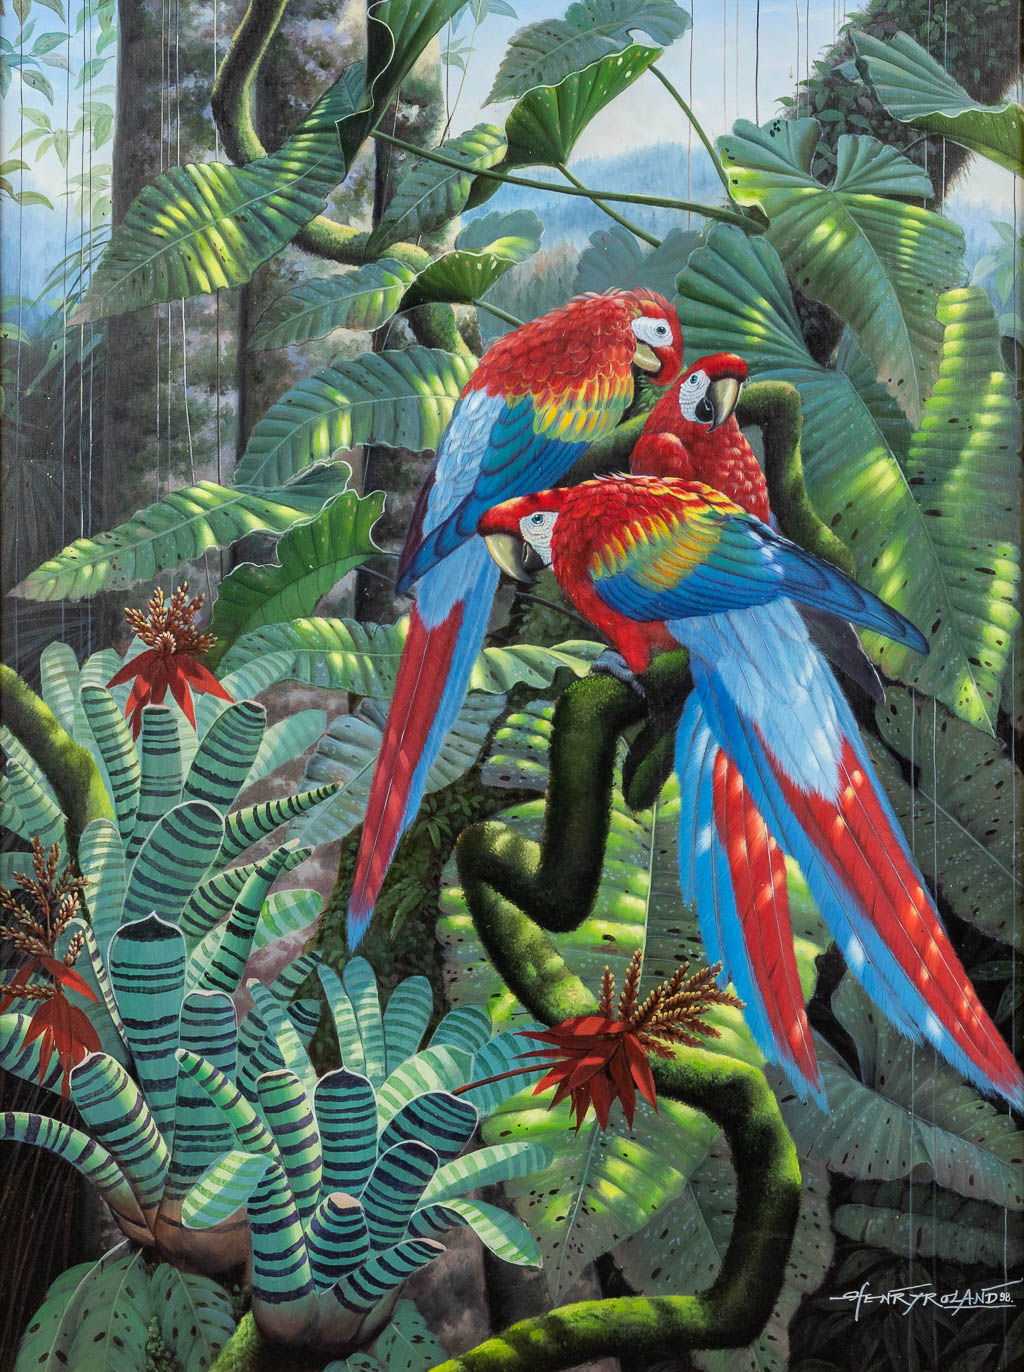 Henry ROLAND (1919-2000) 'Parrots' oil on canvas. 1998 (W:75 x H:100 cm)